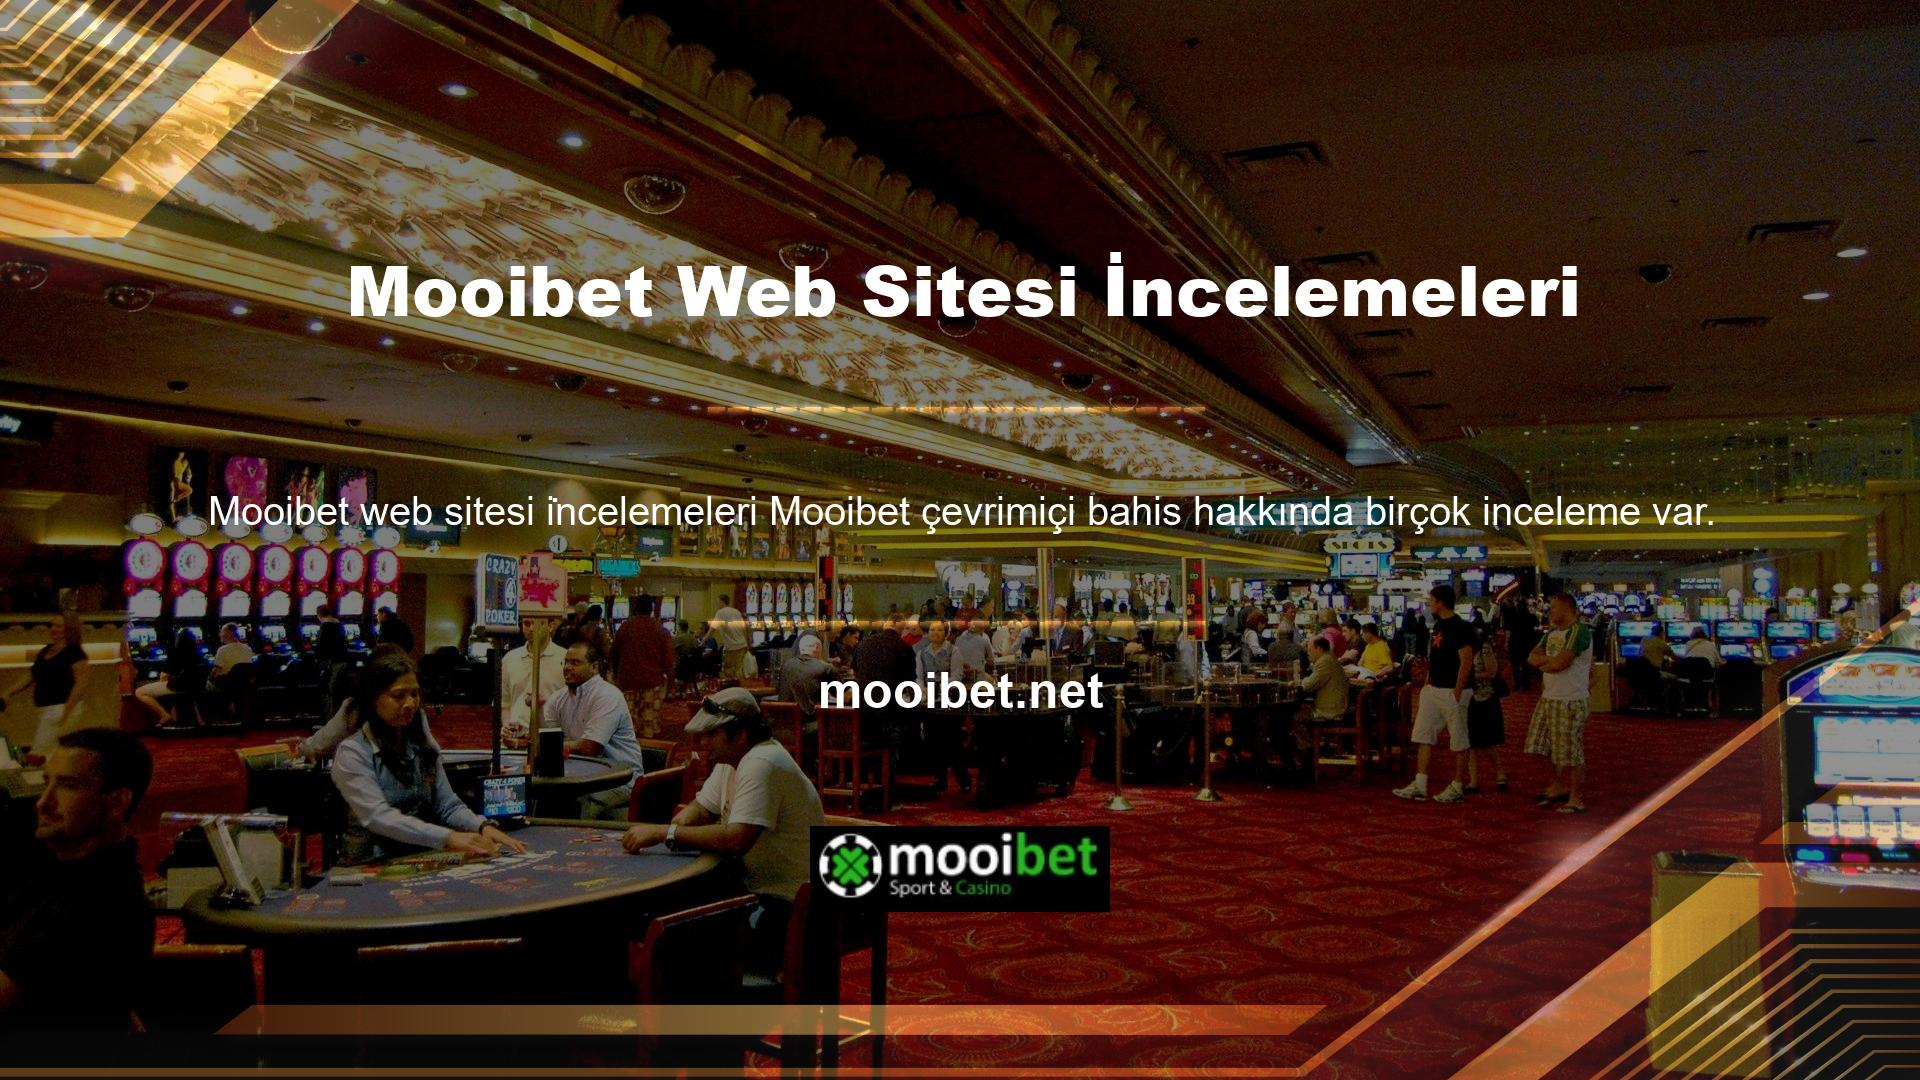 Mooibet web sitesi incelemeleri